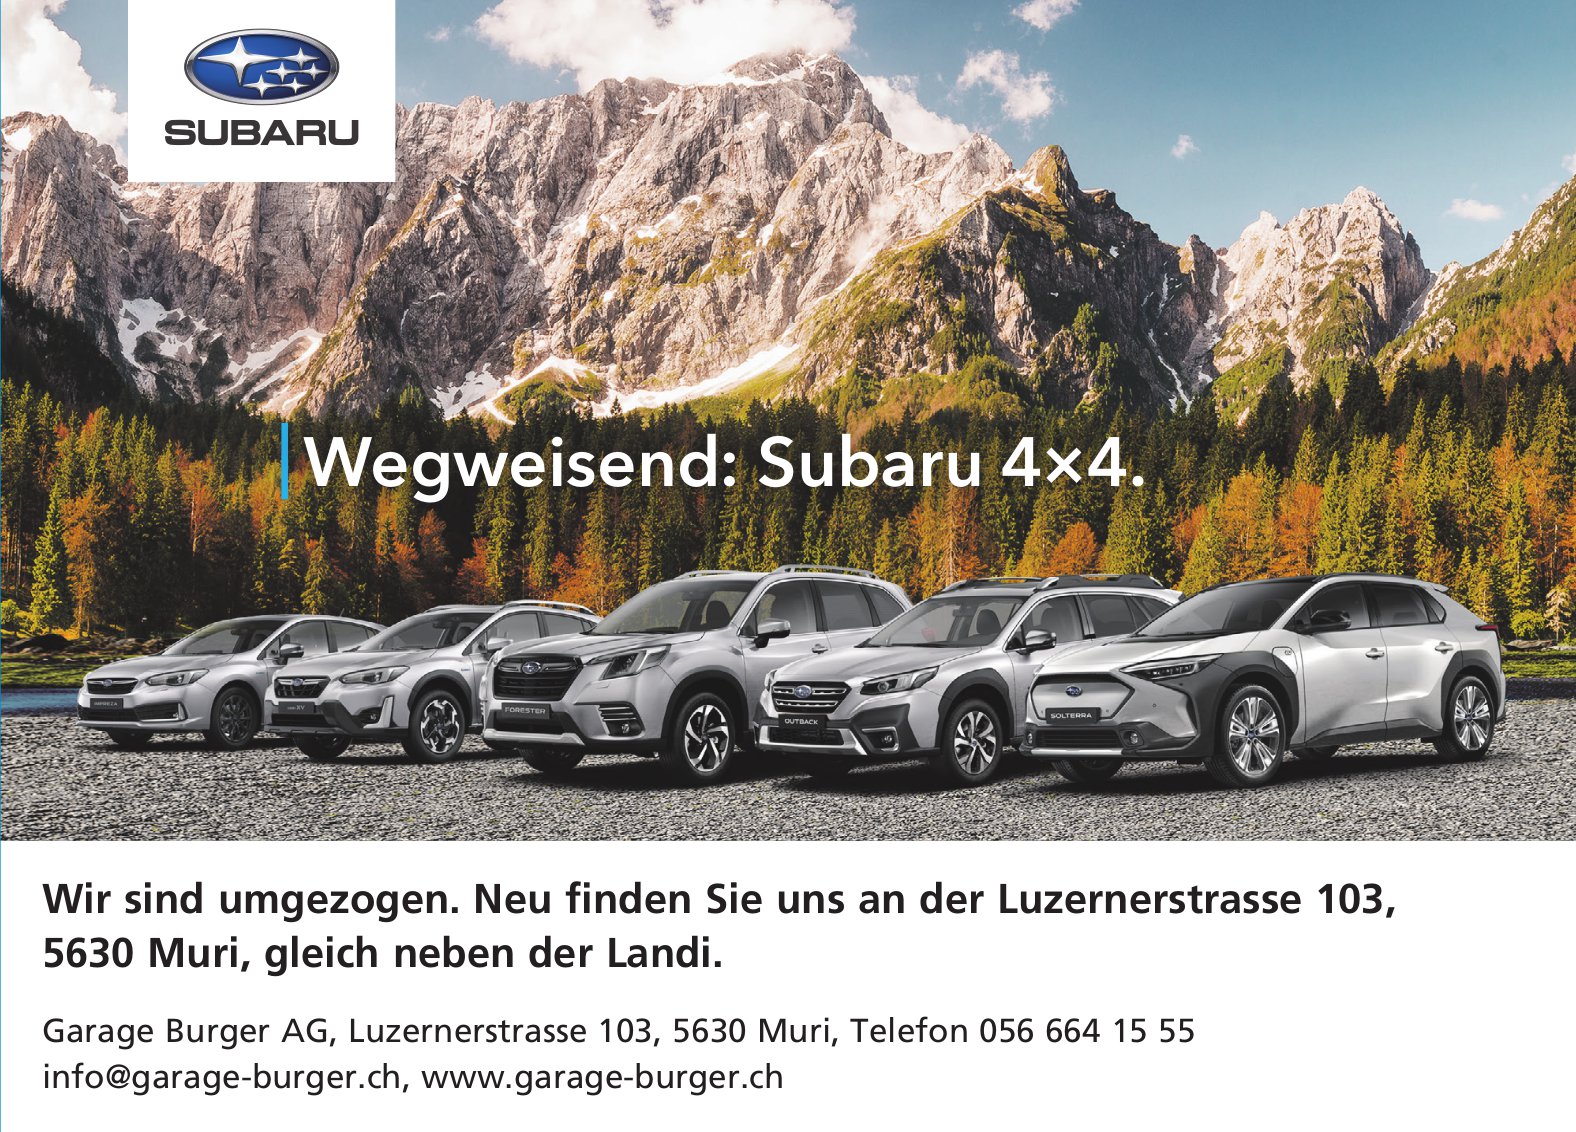 Garage Burger AG, Muri - Wegweisend: Subaru 4×4.